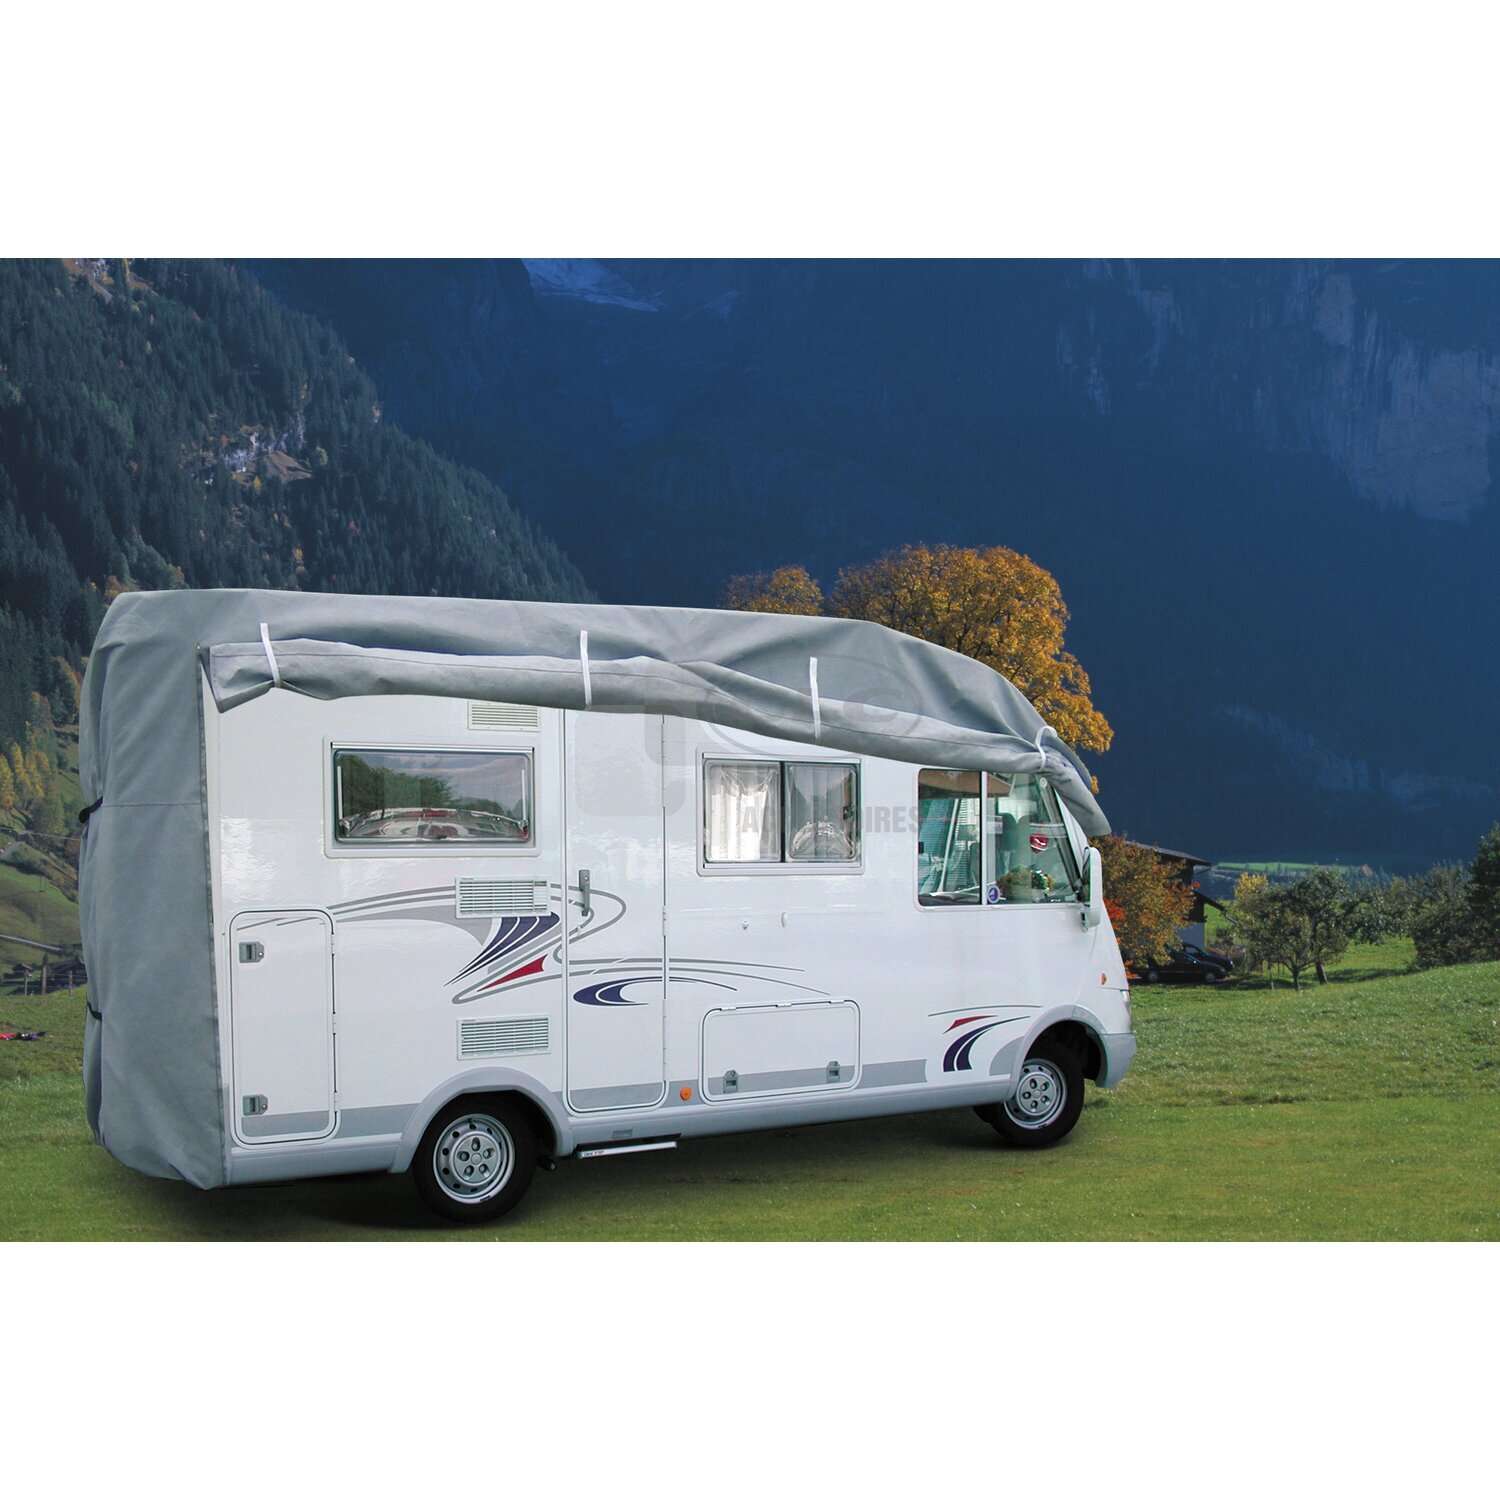 Bache de protection caravane et camping car - Équipement caravaning